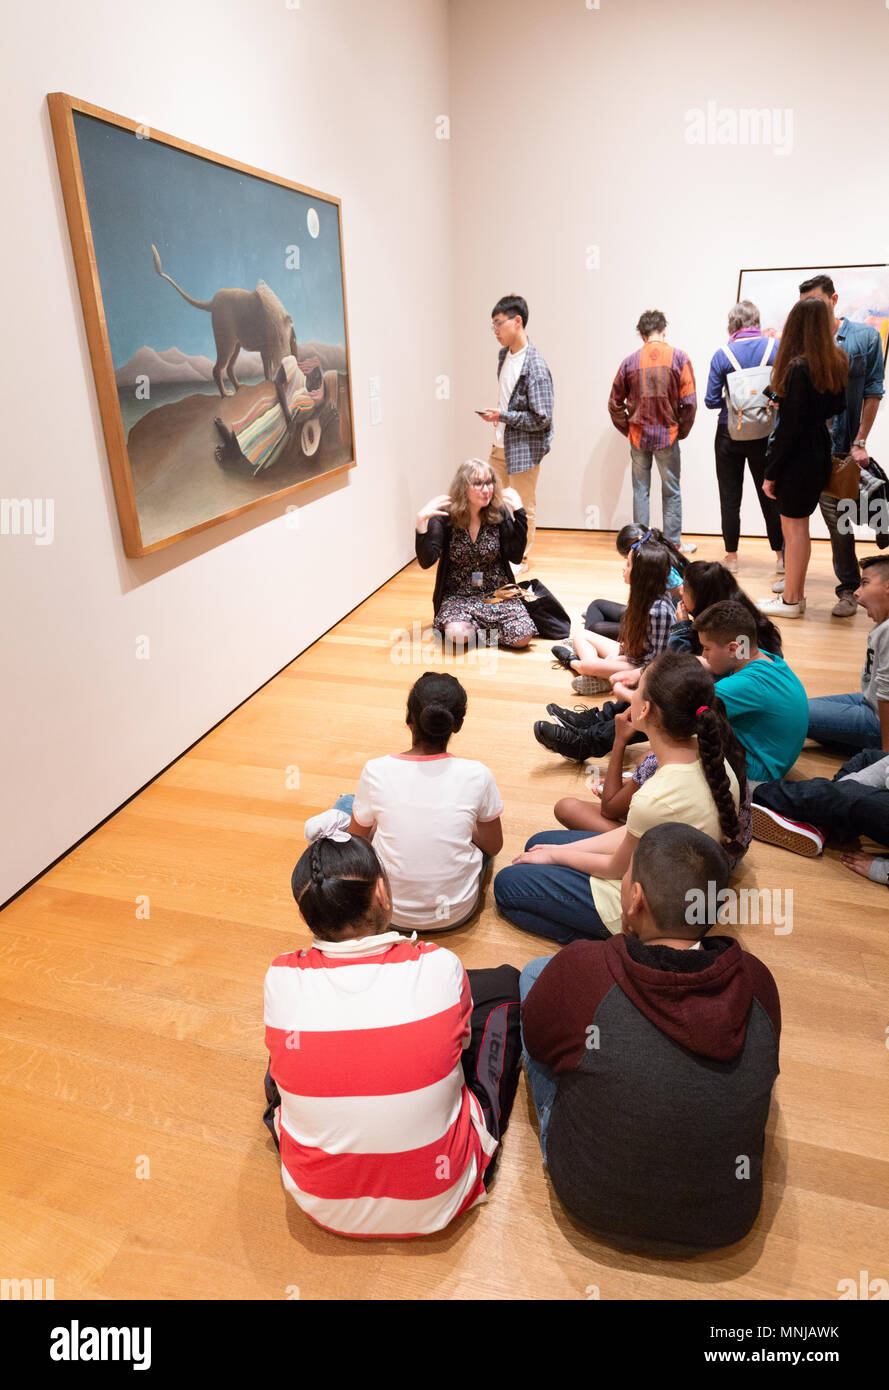 Niños del Museo de Arte; un profesor de arte que enseña a los niños sobre el arte moderno, MoMA ( Museo de Arte Moderno ), Nueva York, EE.UU. Foto de stock